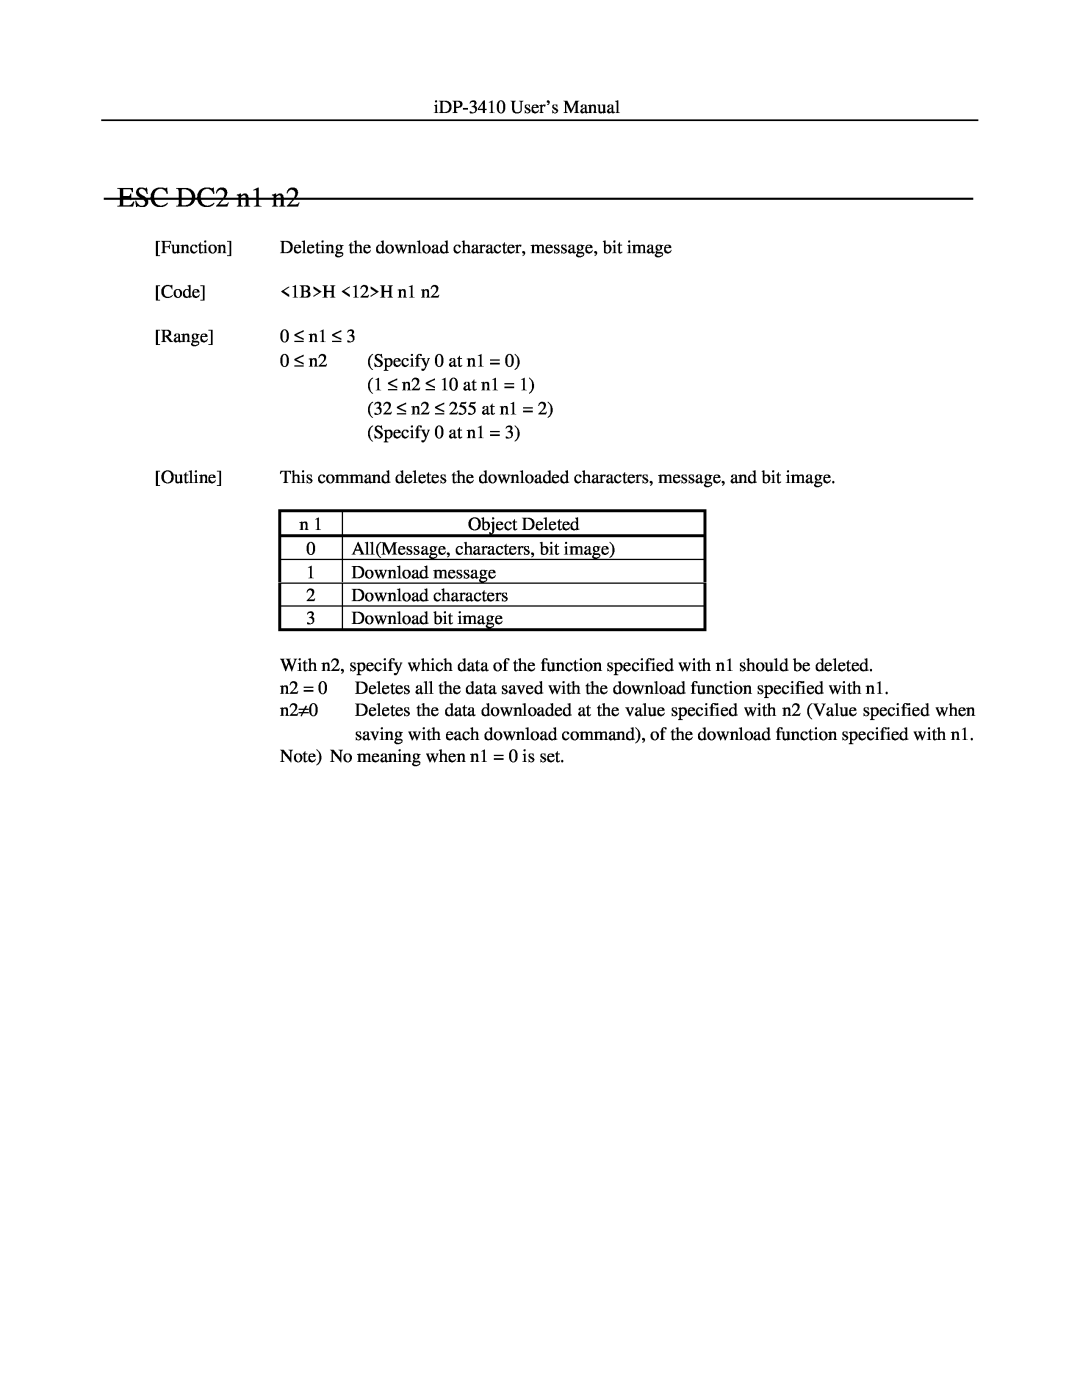 Addlogix iDP-3410 user manual ESC DC2 n1 n2 